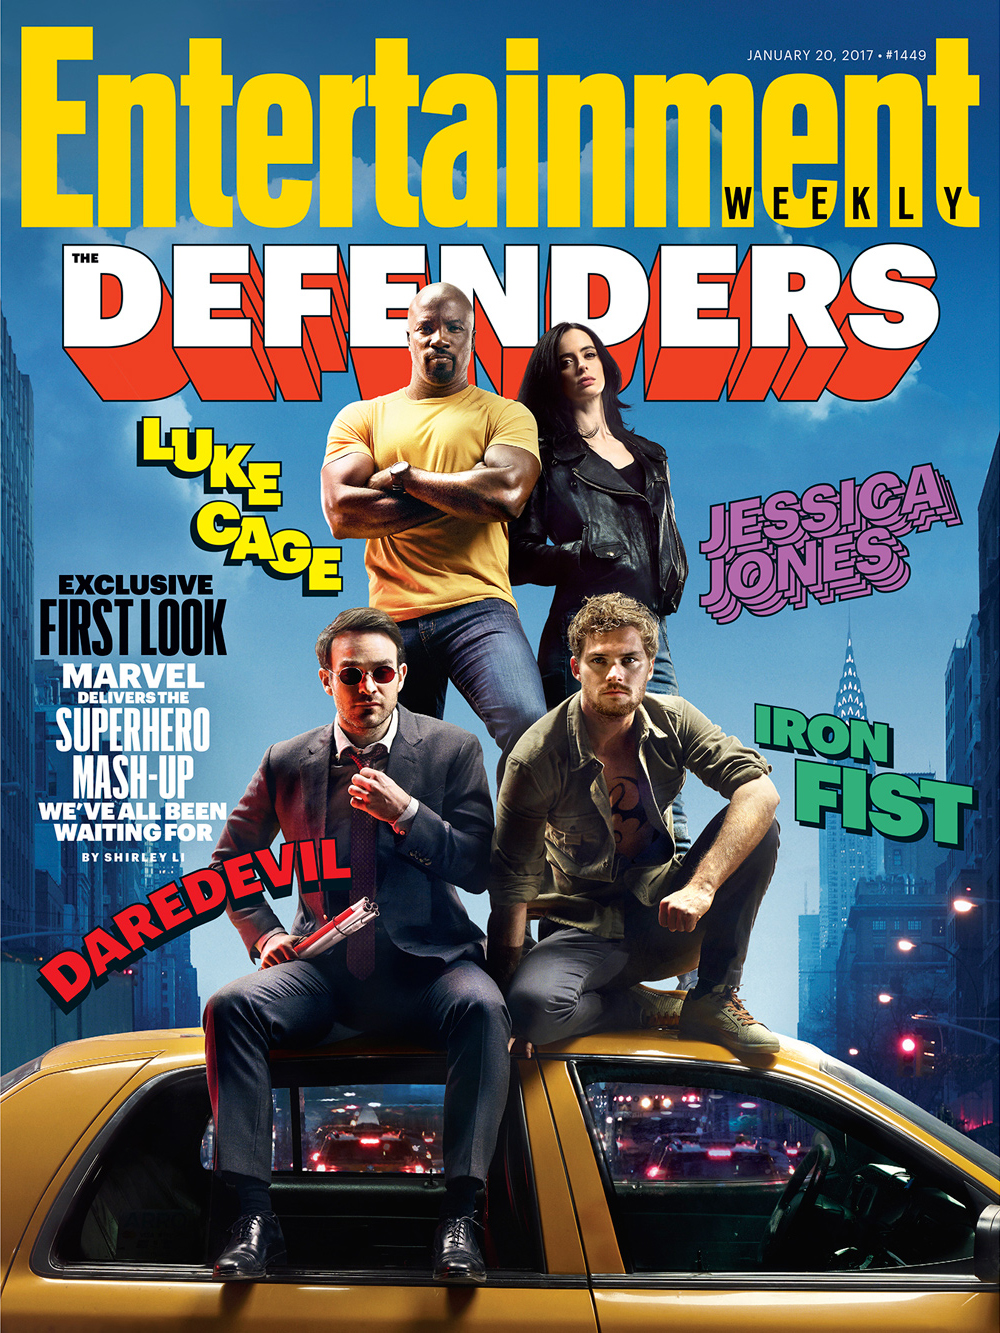 A capa da Entertainment Weekly remete aos quadrinhos do grupo de heróis conhecido como Os Defensores. (Foto: Entertainment Weekly)